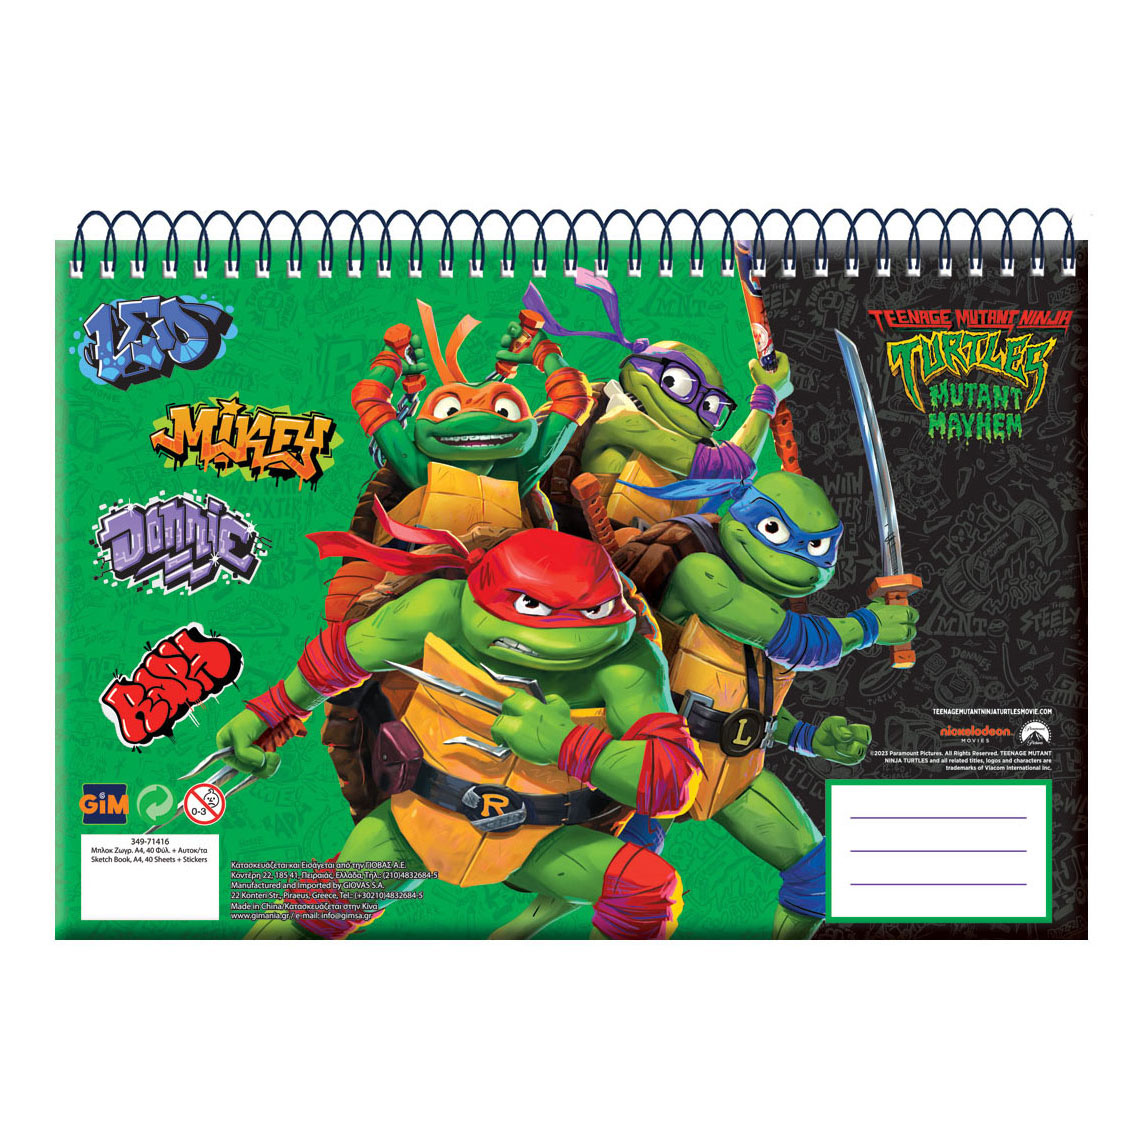 Michelangelo | Ninja turtle drawing, Turtle drawing, Teenage mutant ninja  turtles artwork